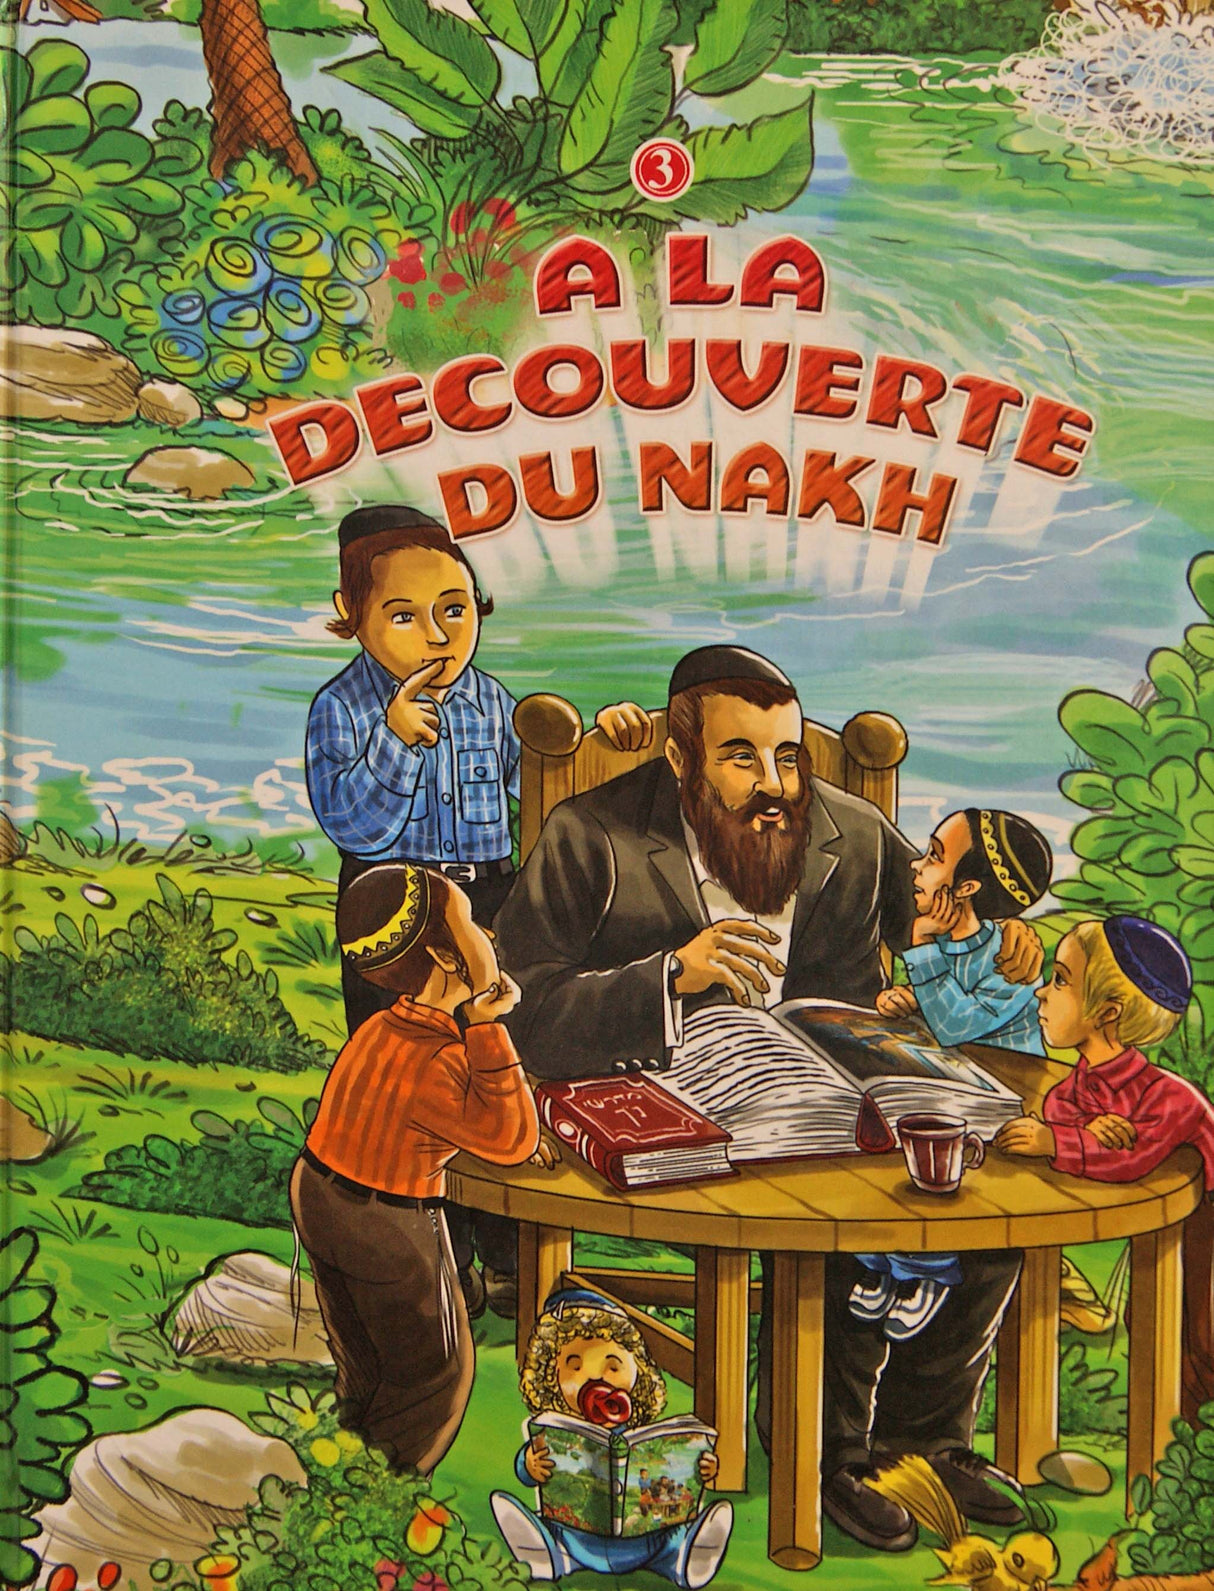 A La Decouverte Du Nakh vol 3